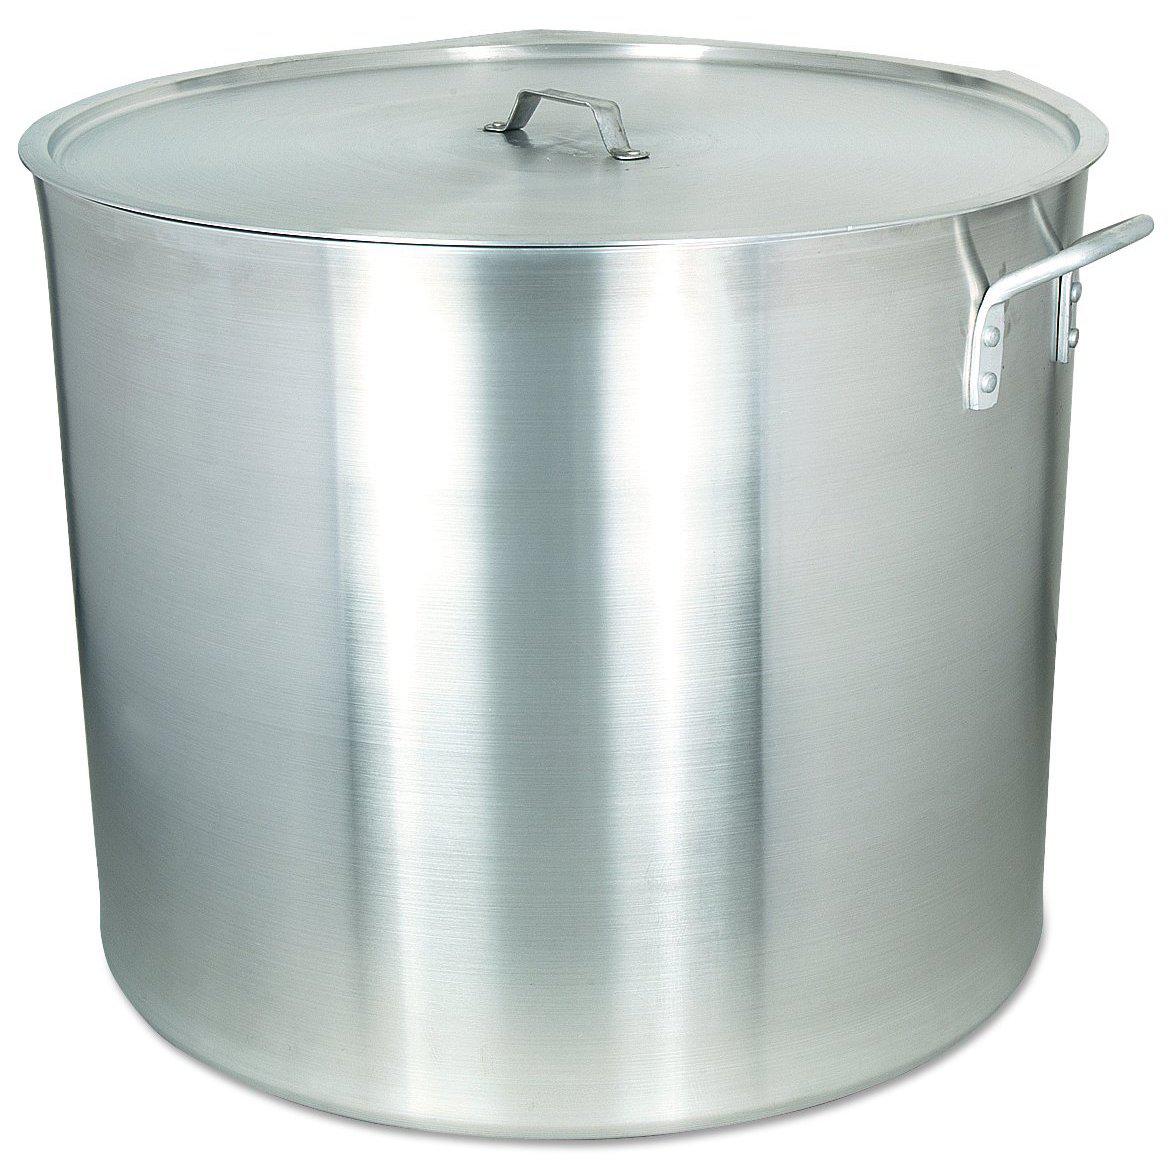 100-160 Qt Heavy Duty Aluminum Stock Pot w/ Cover